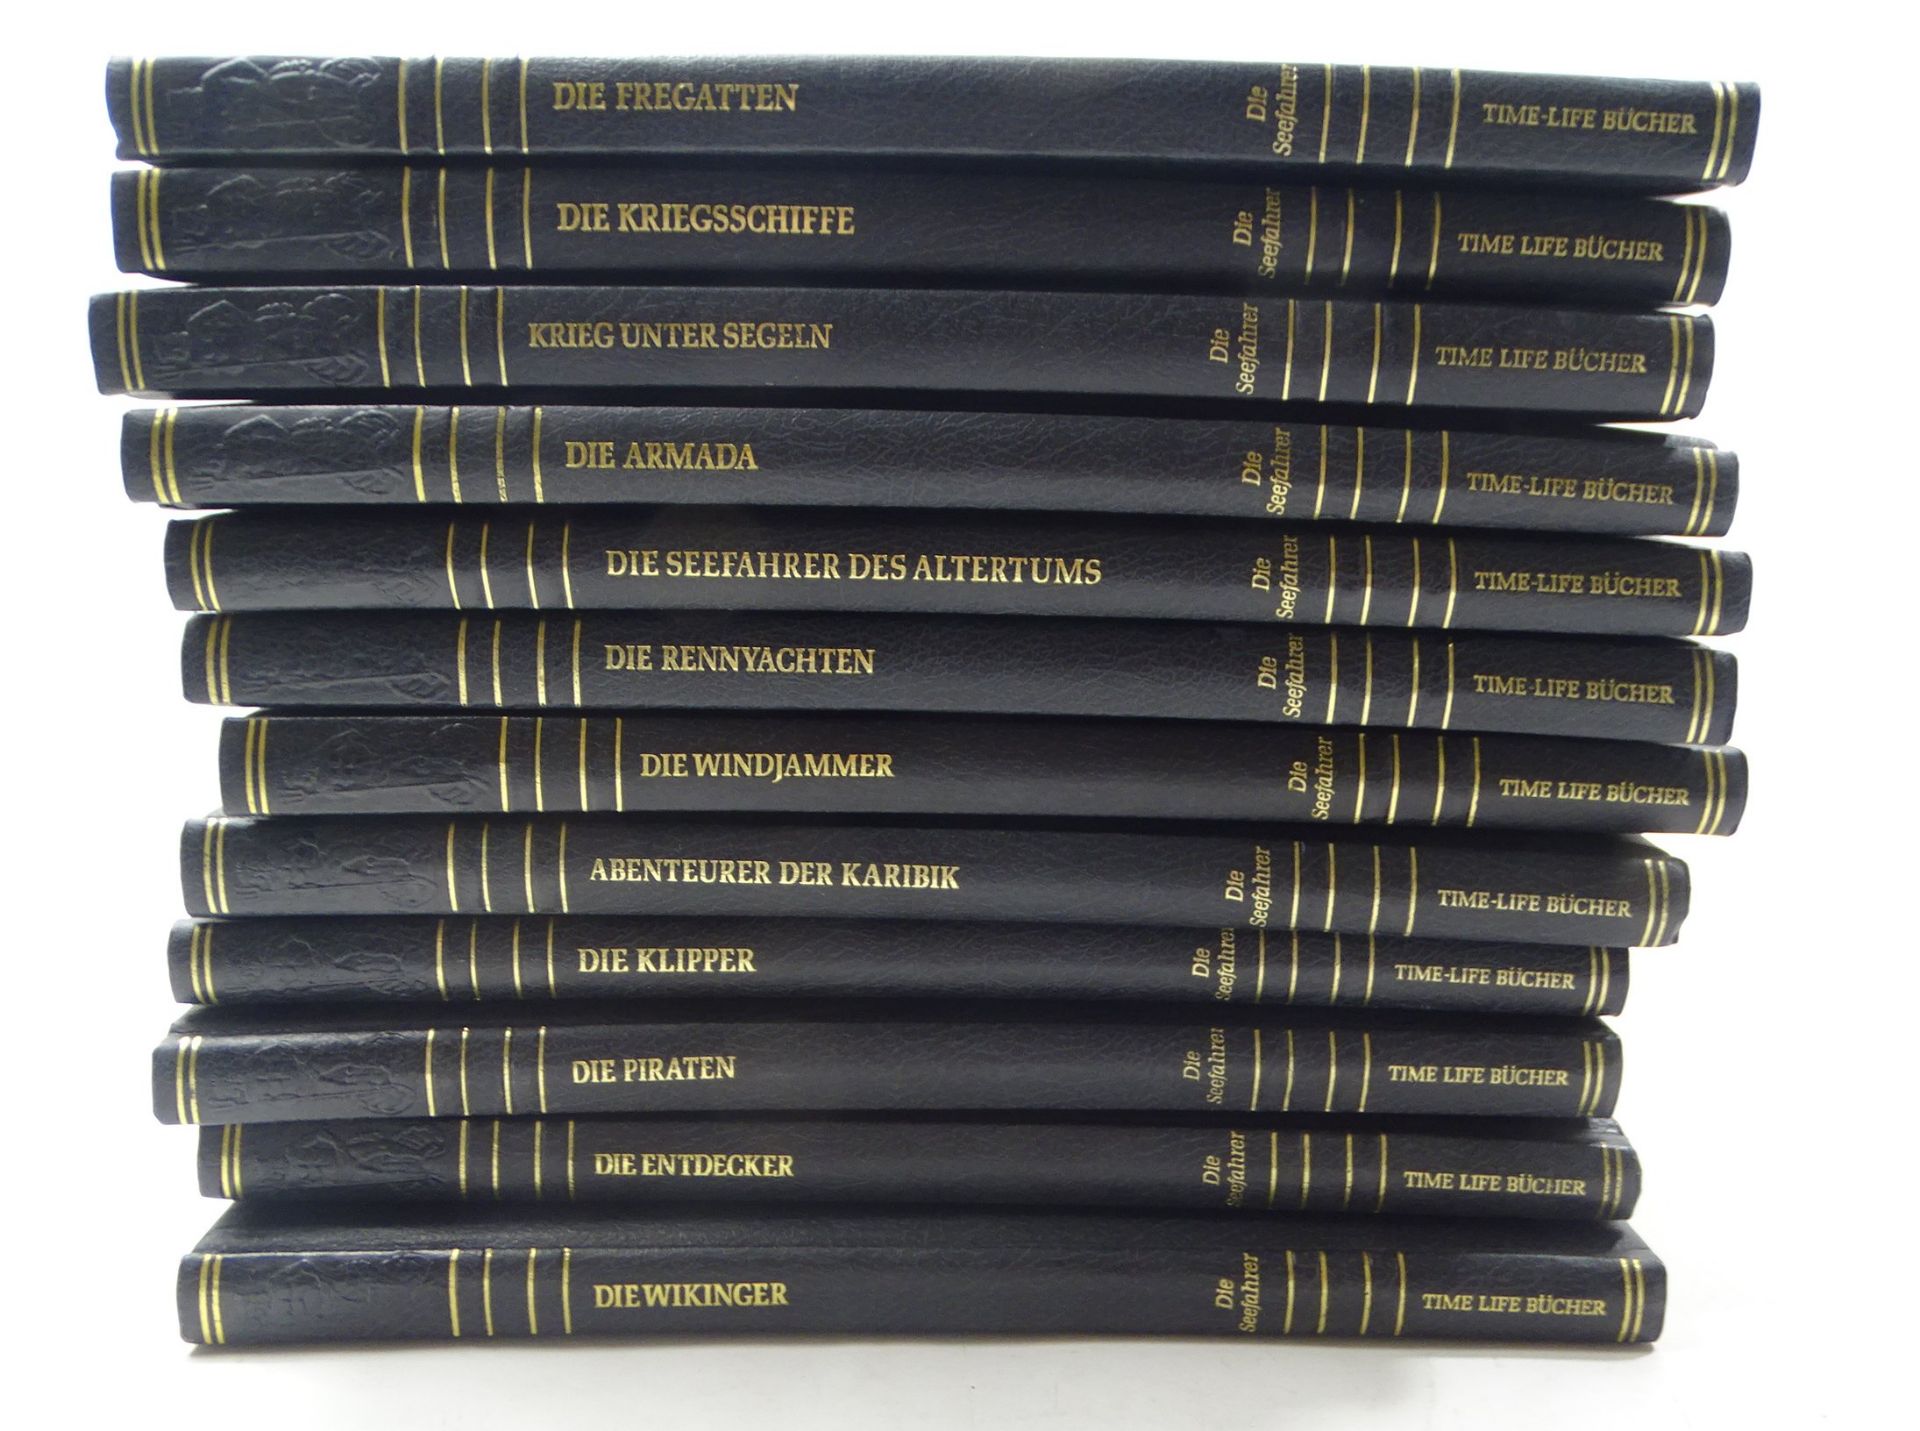 12 Bände "Die Seefahrer", Time-Life Bücher, 1979-81, zahlreiche farbige Abbildungen, gut erhalten, 